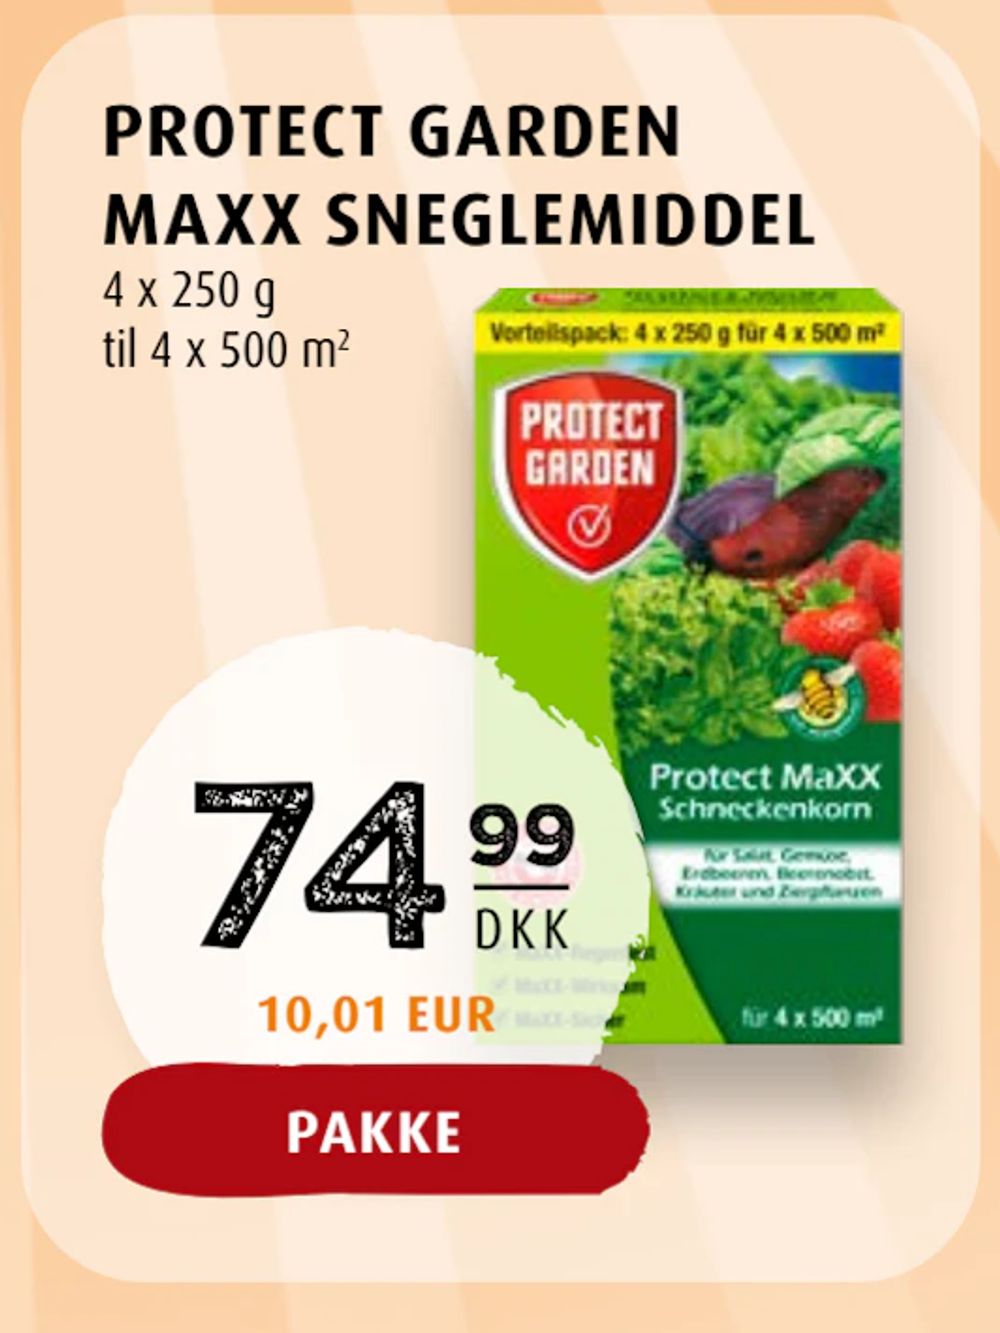 Tilbud på PROTECT GARDEN MAXX SNEGLEMIDDEL fra Scandinavian Park til 74,99 kr.